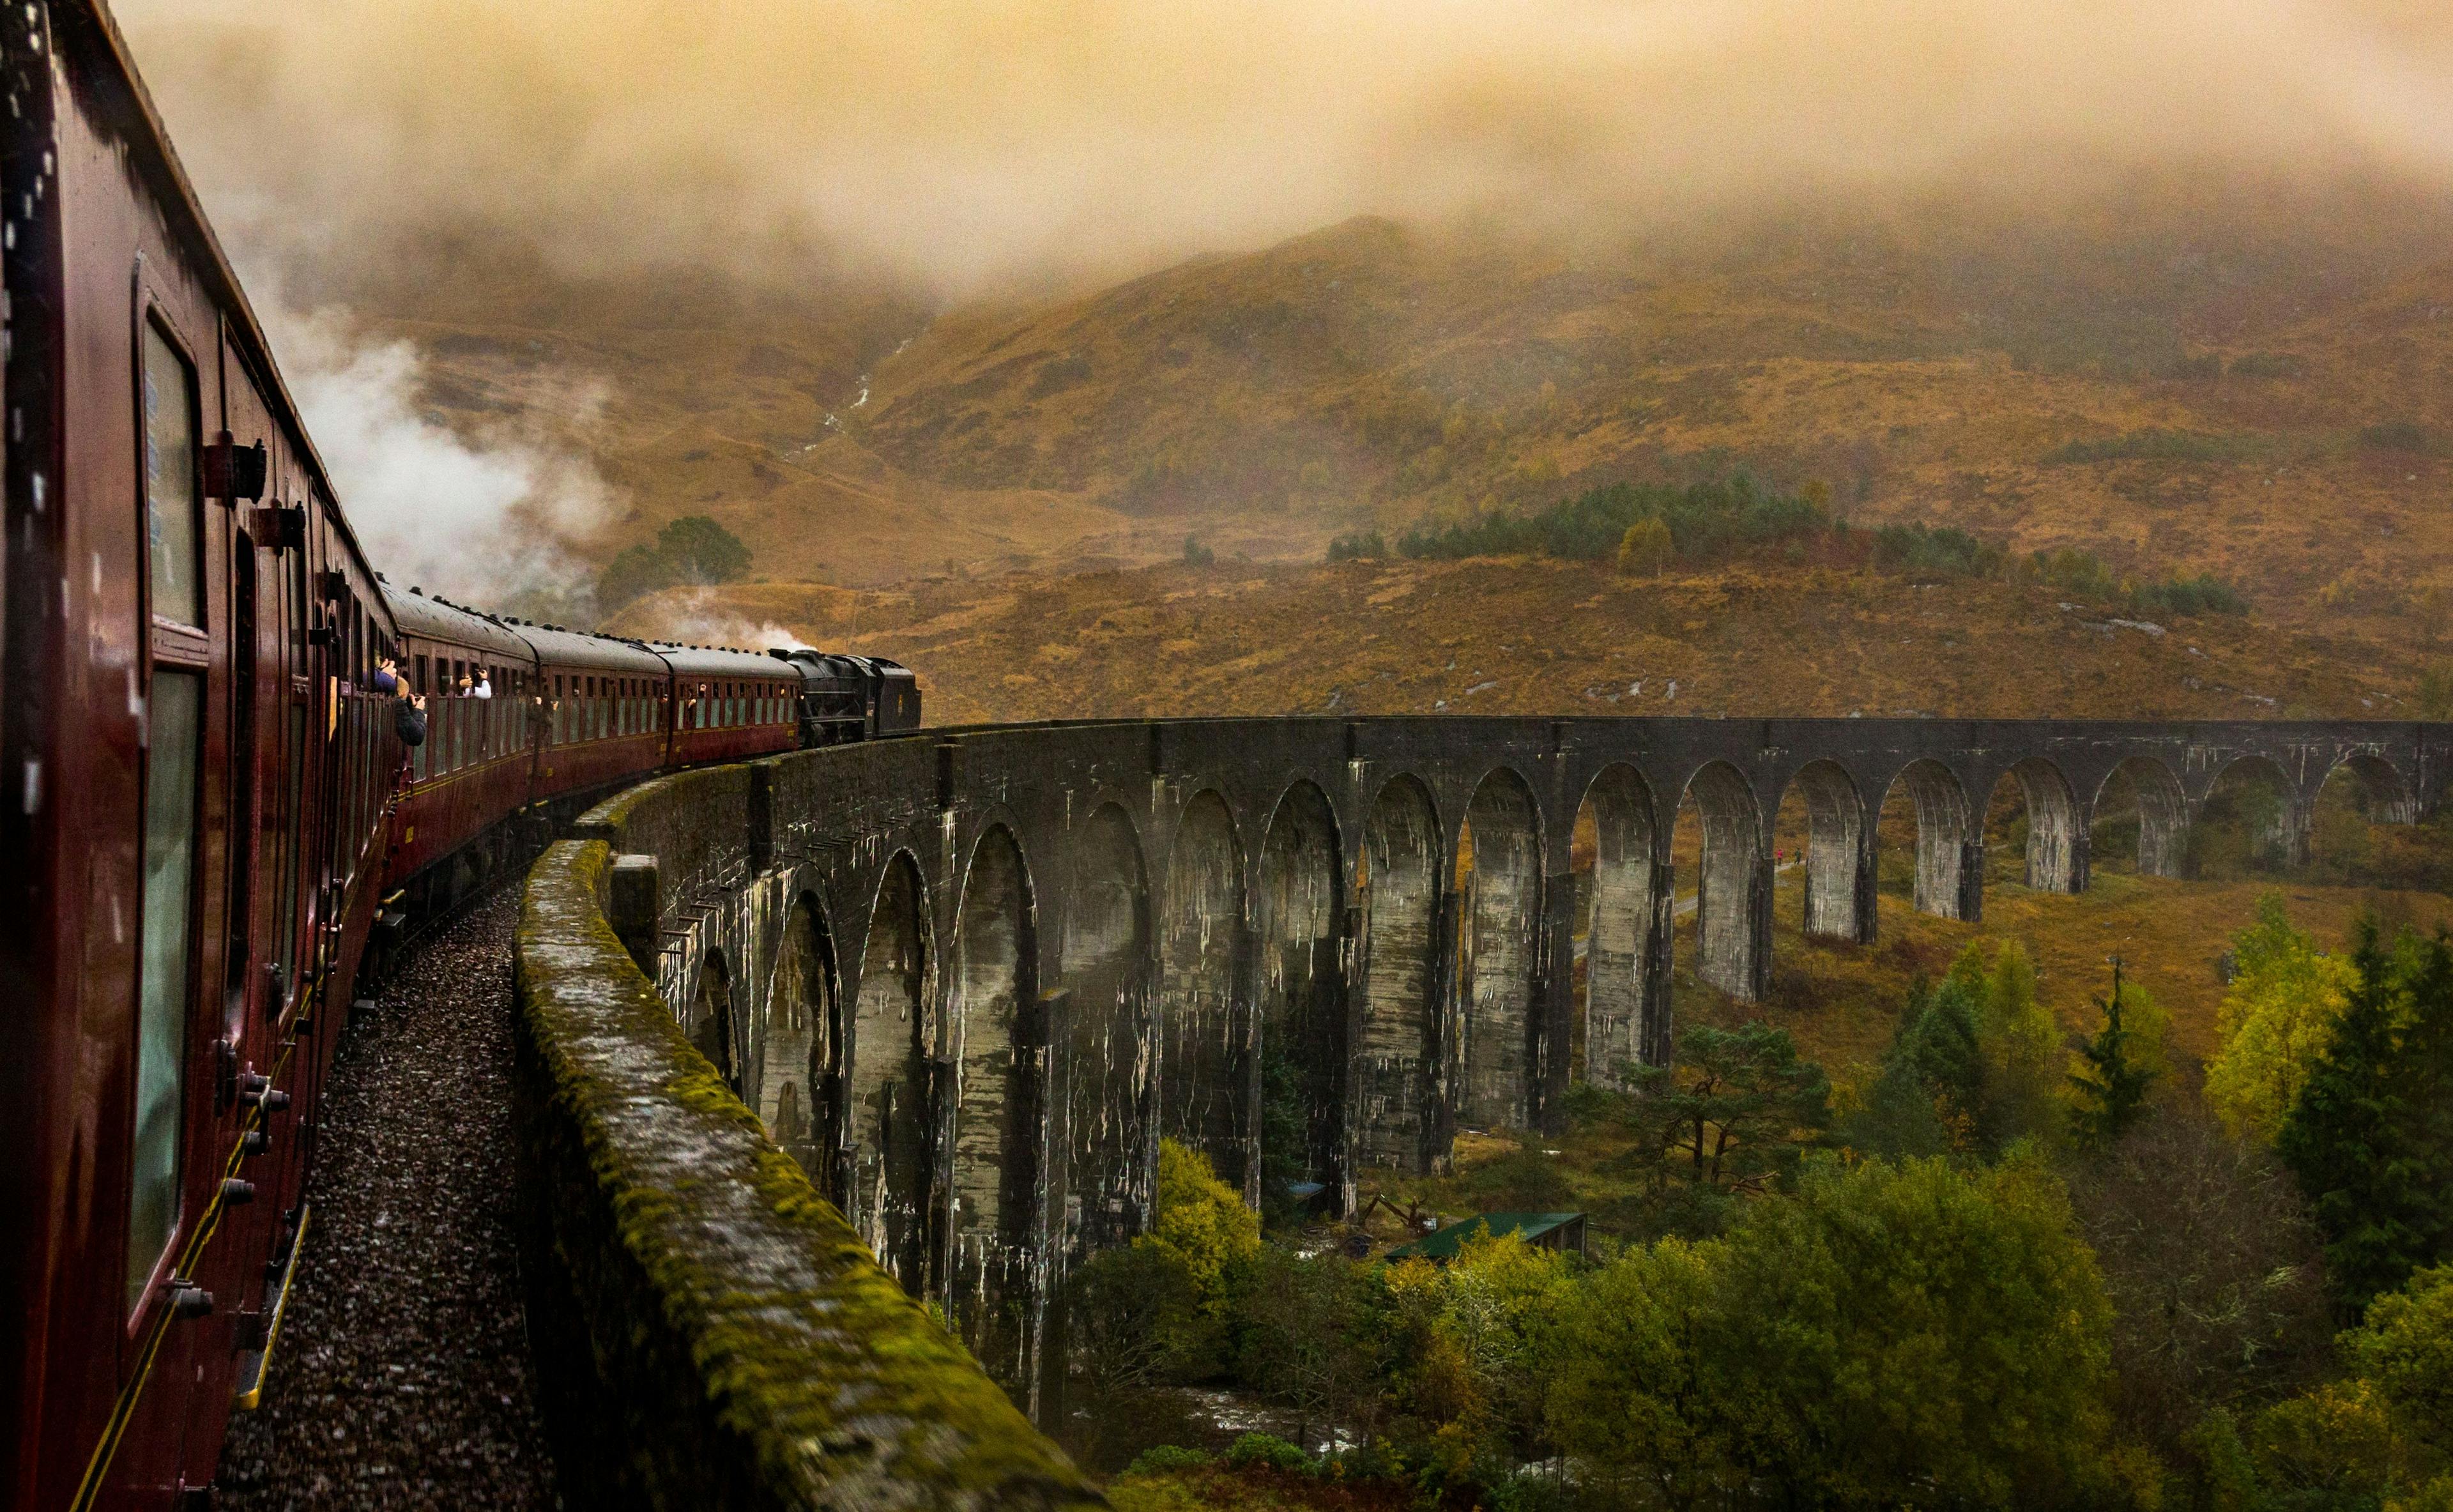 Jacobite Steam Train in Scotland.